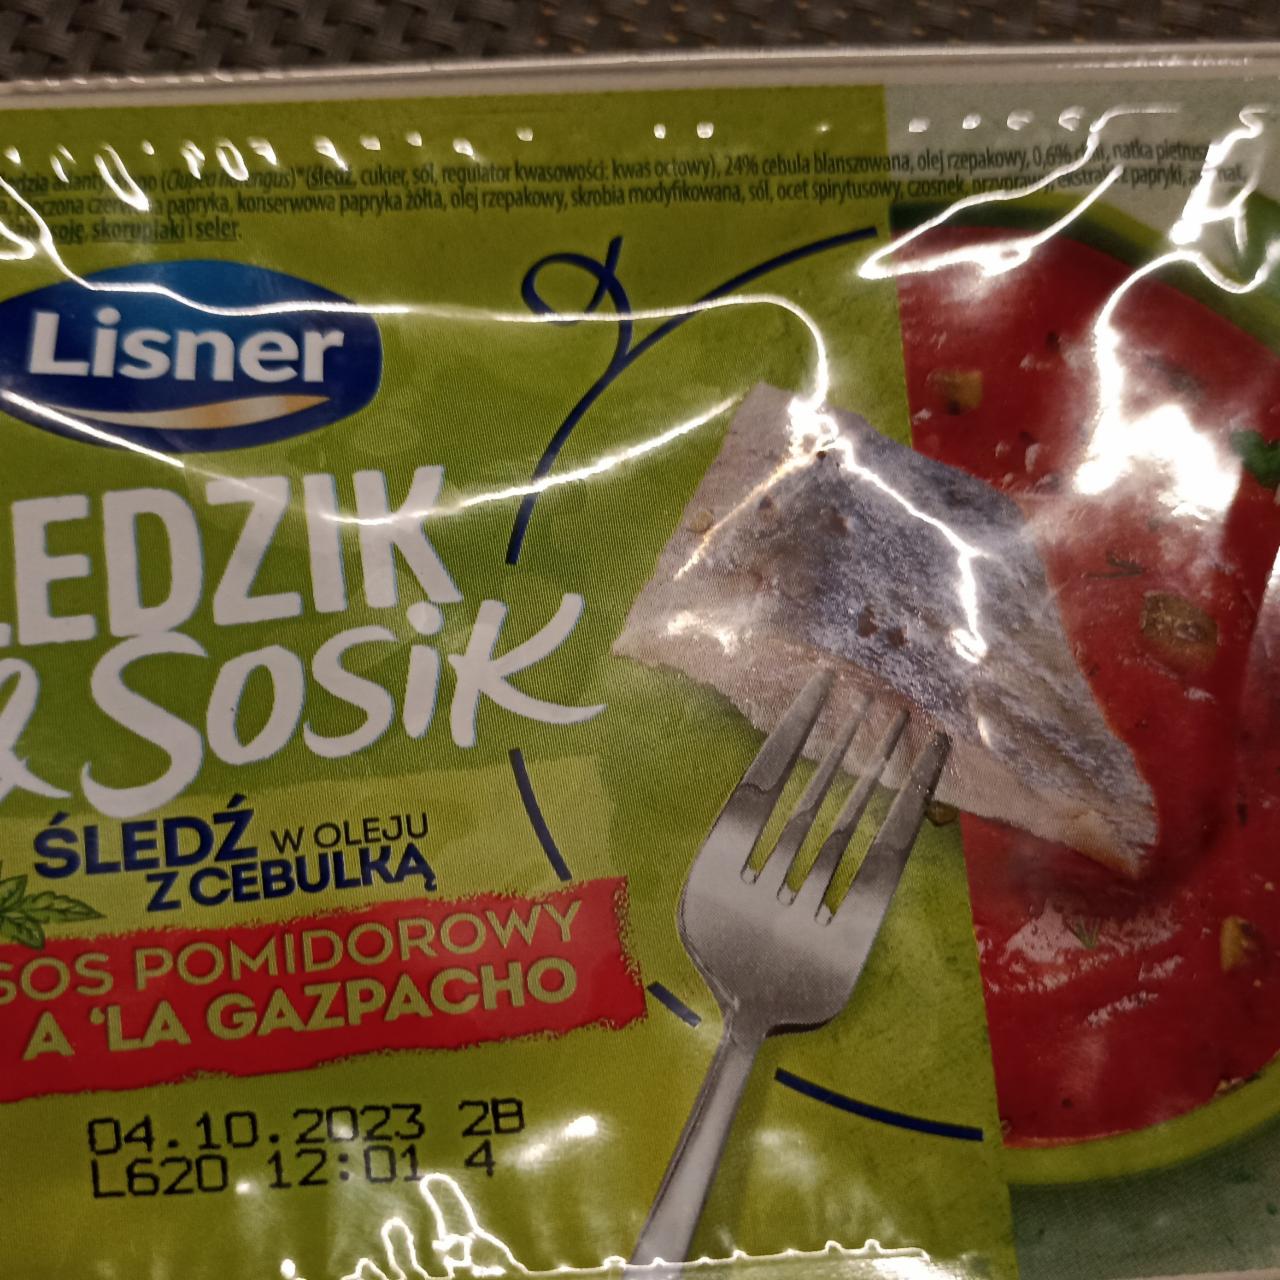 Zdjęcia - Śledzik & Sosik Śledź w oleju z cebulką sos pomidorowy a'la gazpacho Lisner